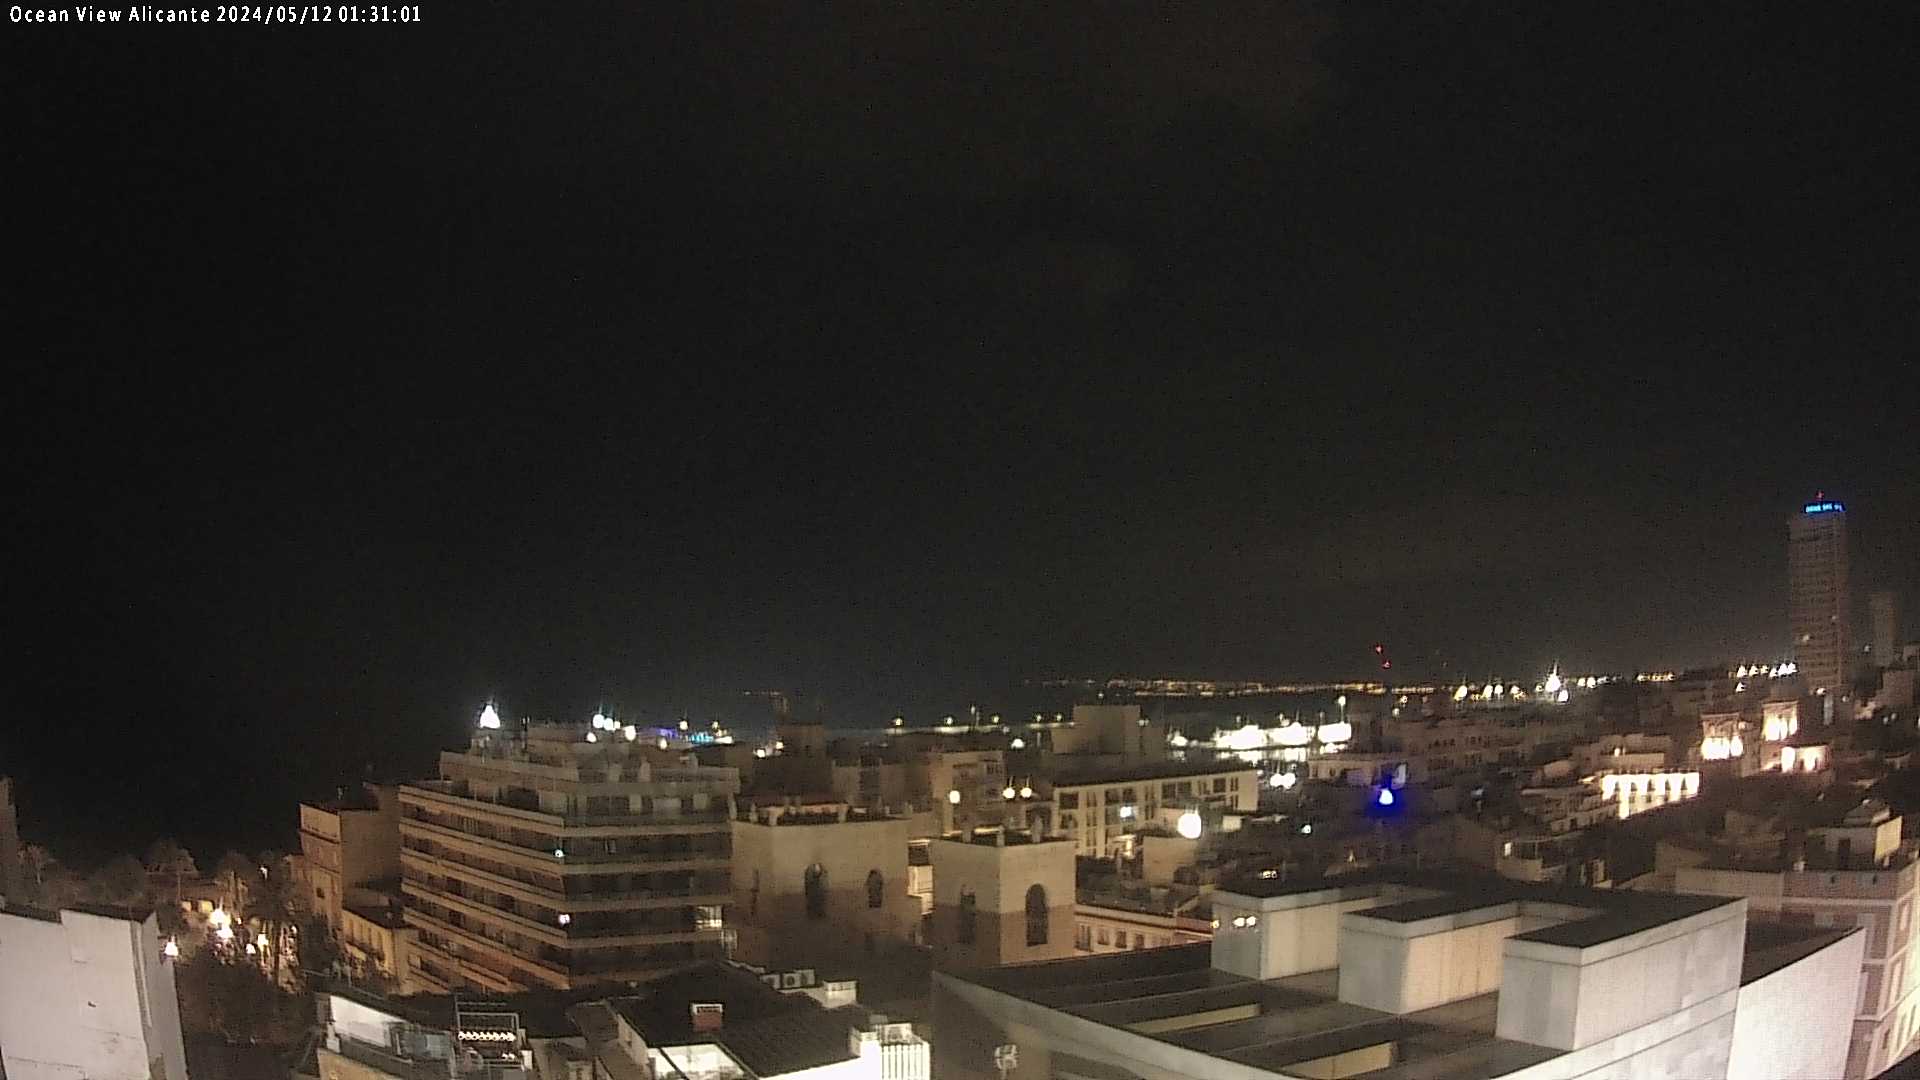 Alicante Tor. 01:31